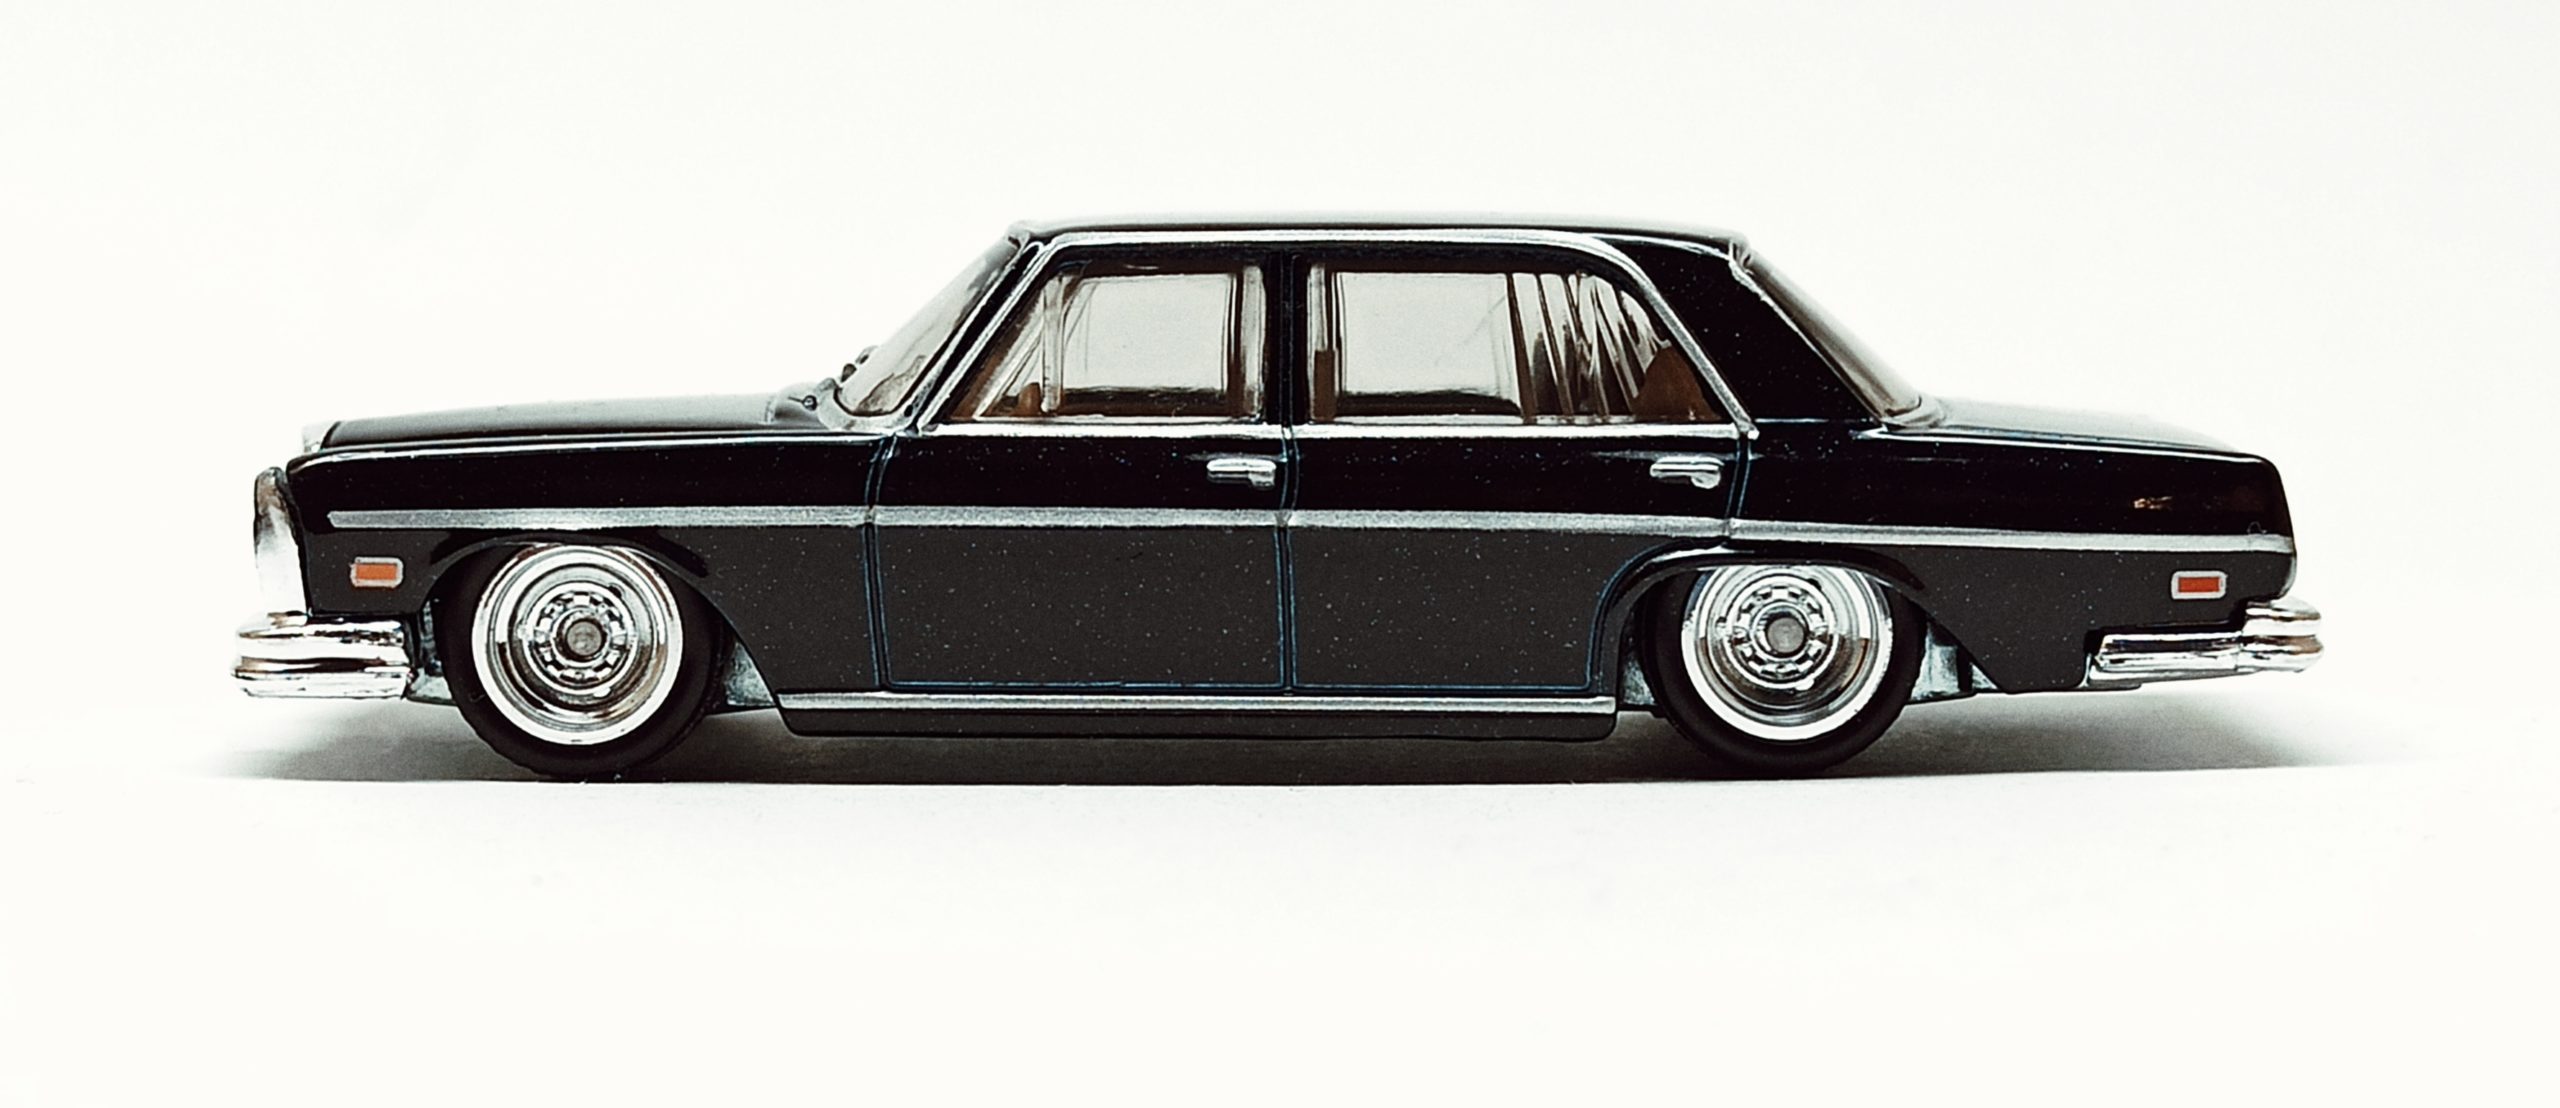 Hot Wheels '72 Mercedes-Benz 280 SEL 4.5 (GJP97) 2020 Car Culture: Modern Classics (5/5) metalflake black